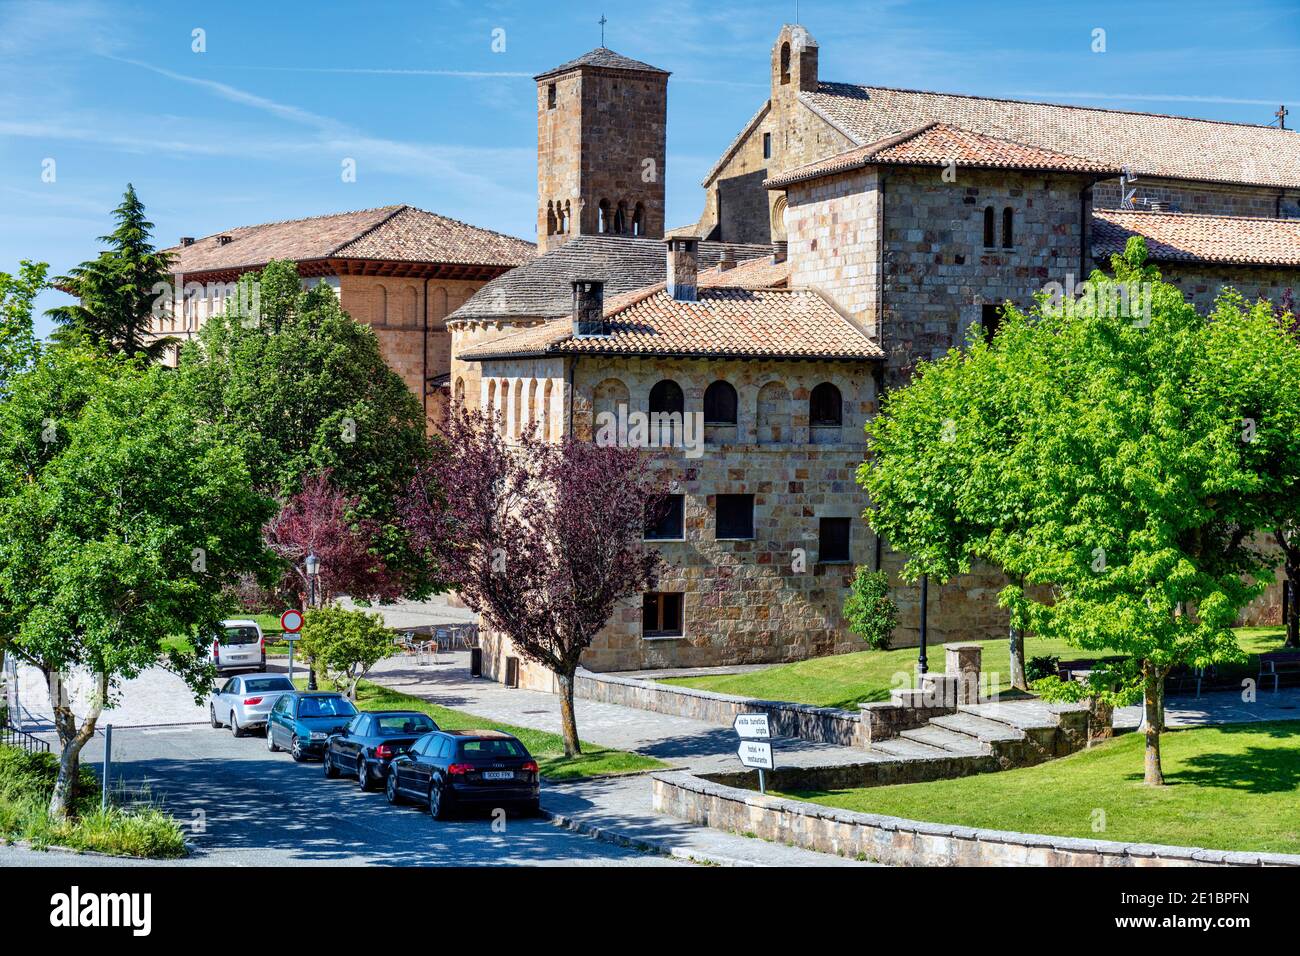 Le monastère de San Salvador de Leyre, Navarre, Espagne. Banque D'Images